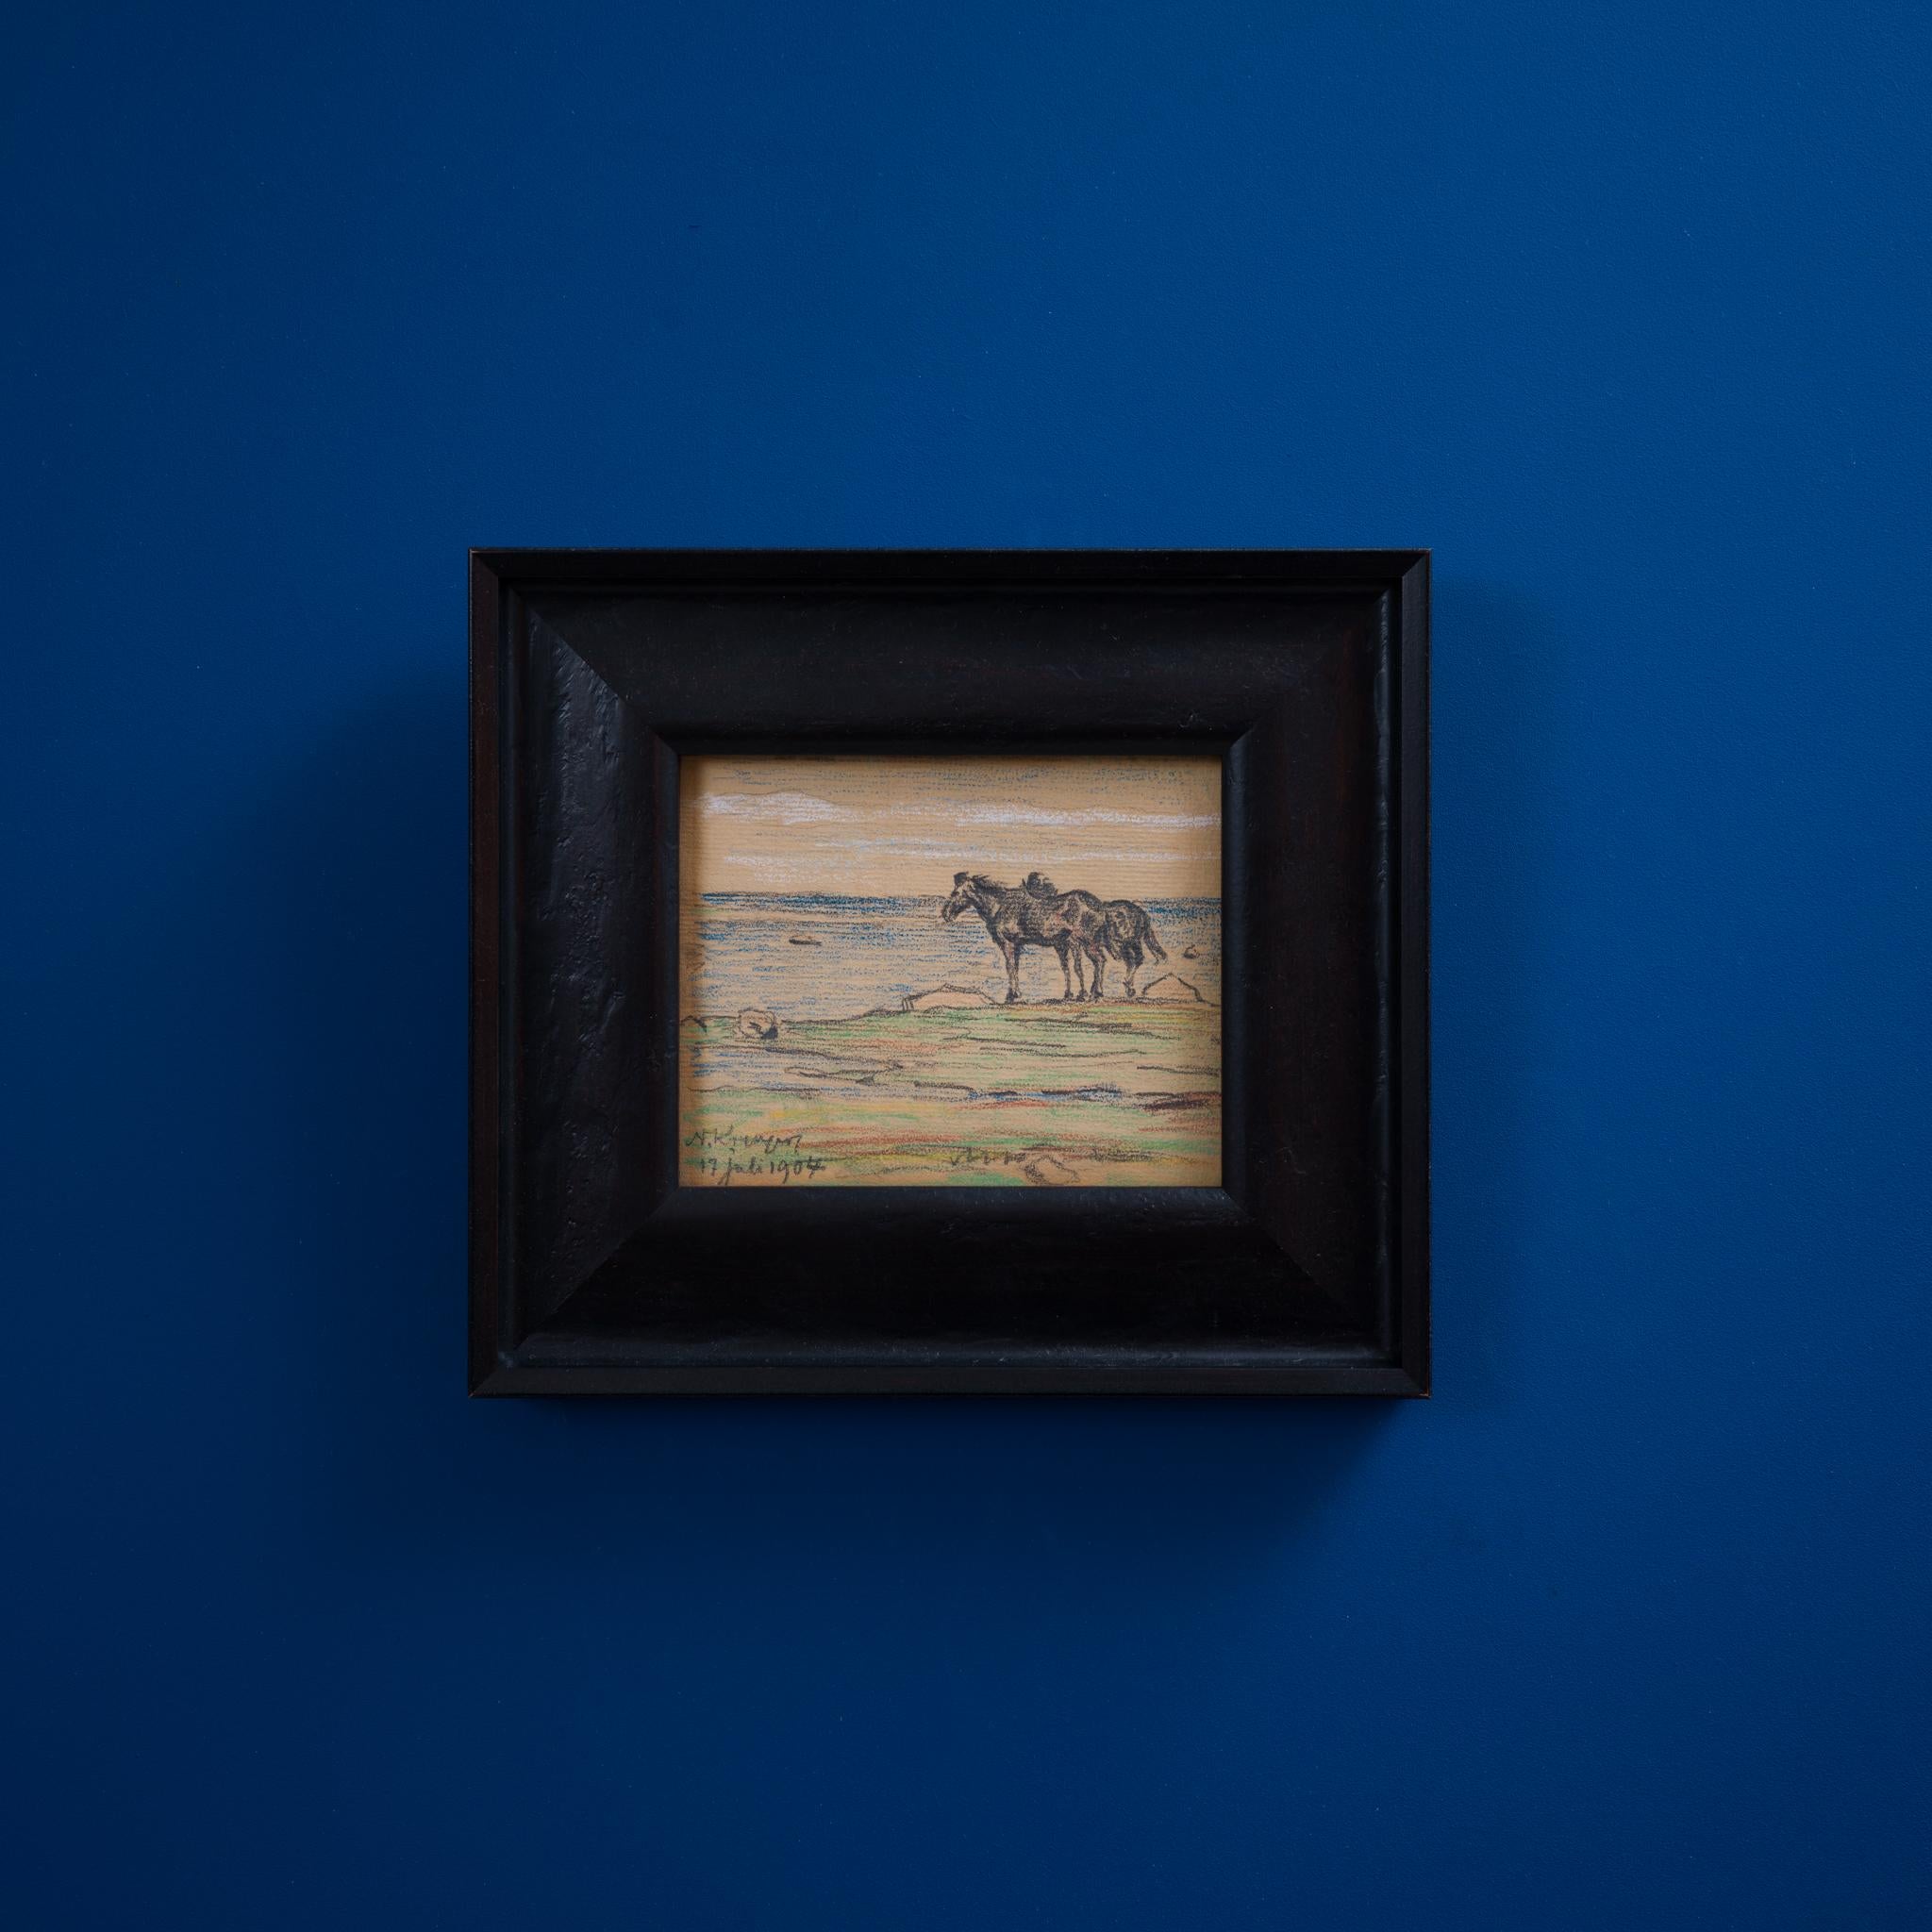 Dieses exquisite kleine Pastellgemälde des bekannten schwedischen Künstlers Nils Kreuger misst nur 11 x 14 cm. Das am 17. Juli 1904 signierte und datierte Kunstwerk zeigt zwei Pferde am Rande der Ostsee, eine ruhige Szene, die wahrscheinlich von der